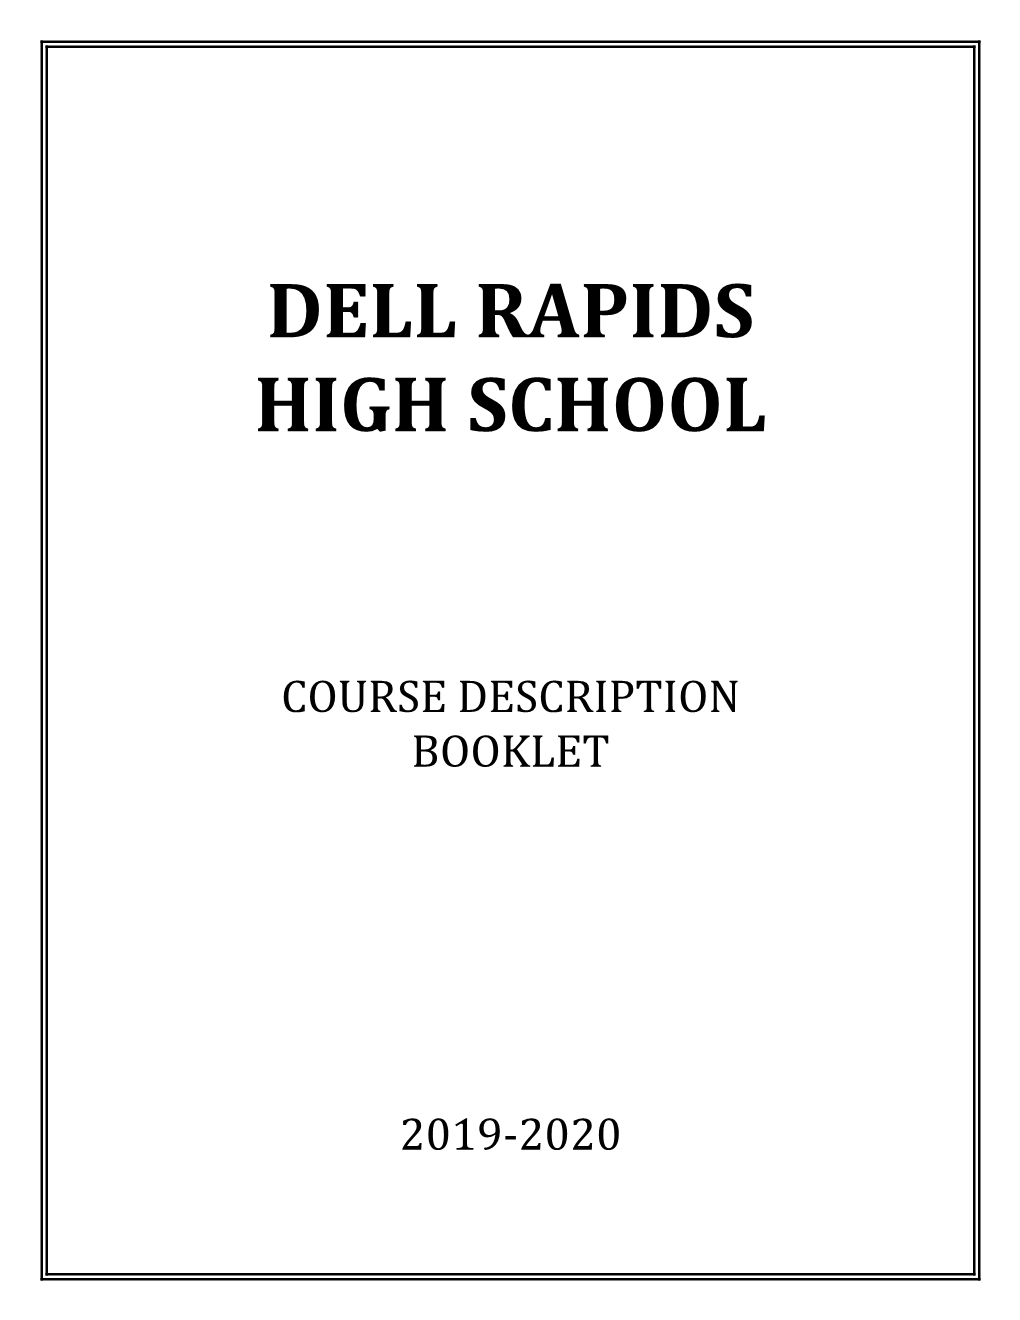 2019-2020 Course Description Booklet 2019-2020